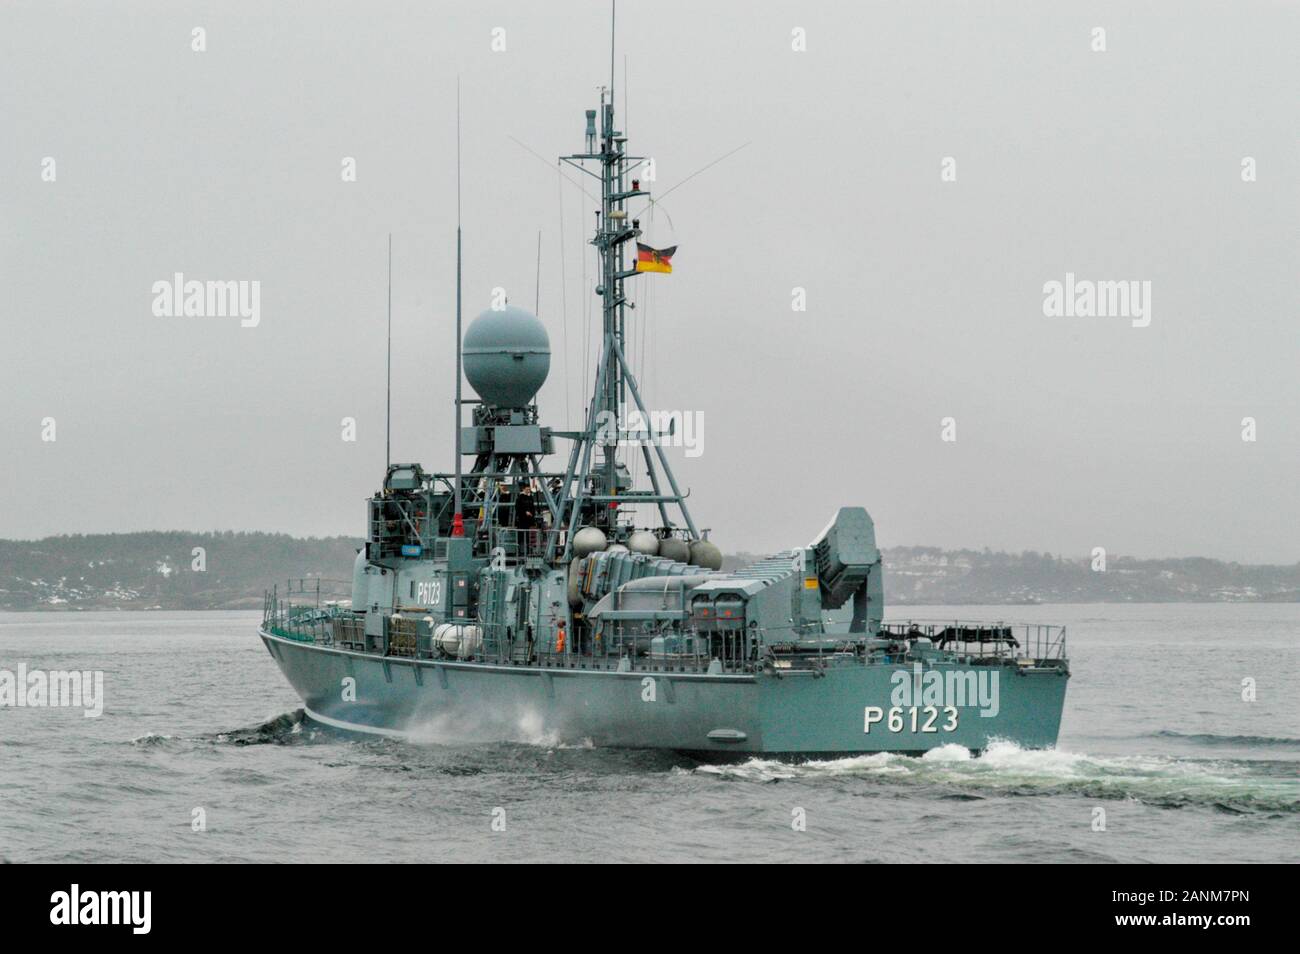 Il tipo 143A Gepard classe attacco rapido missile craft 'S73 Hermelin' della Marina tedesca (Deutsche Marine) che era in servizio dal 1983 al 2016. Visto qui nelle acque norvegesi. Foto Stock